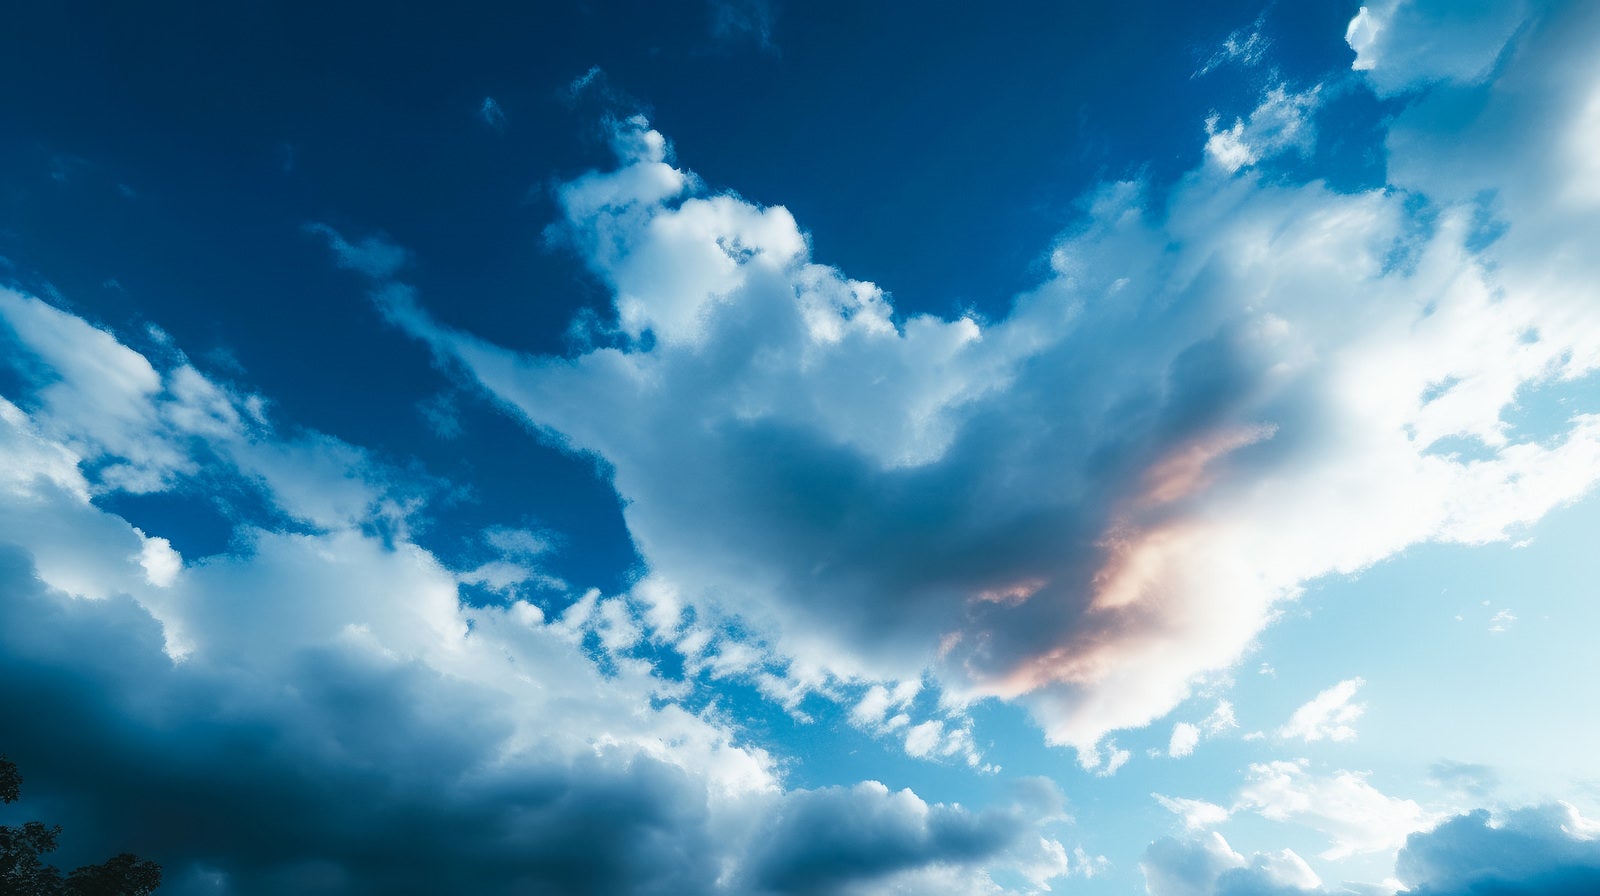 「彩雲と青空」の写真